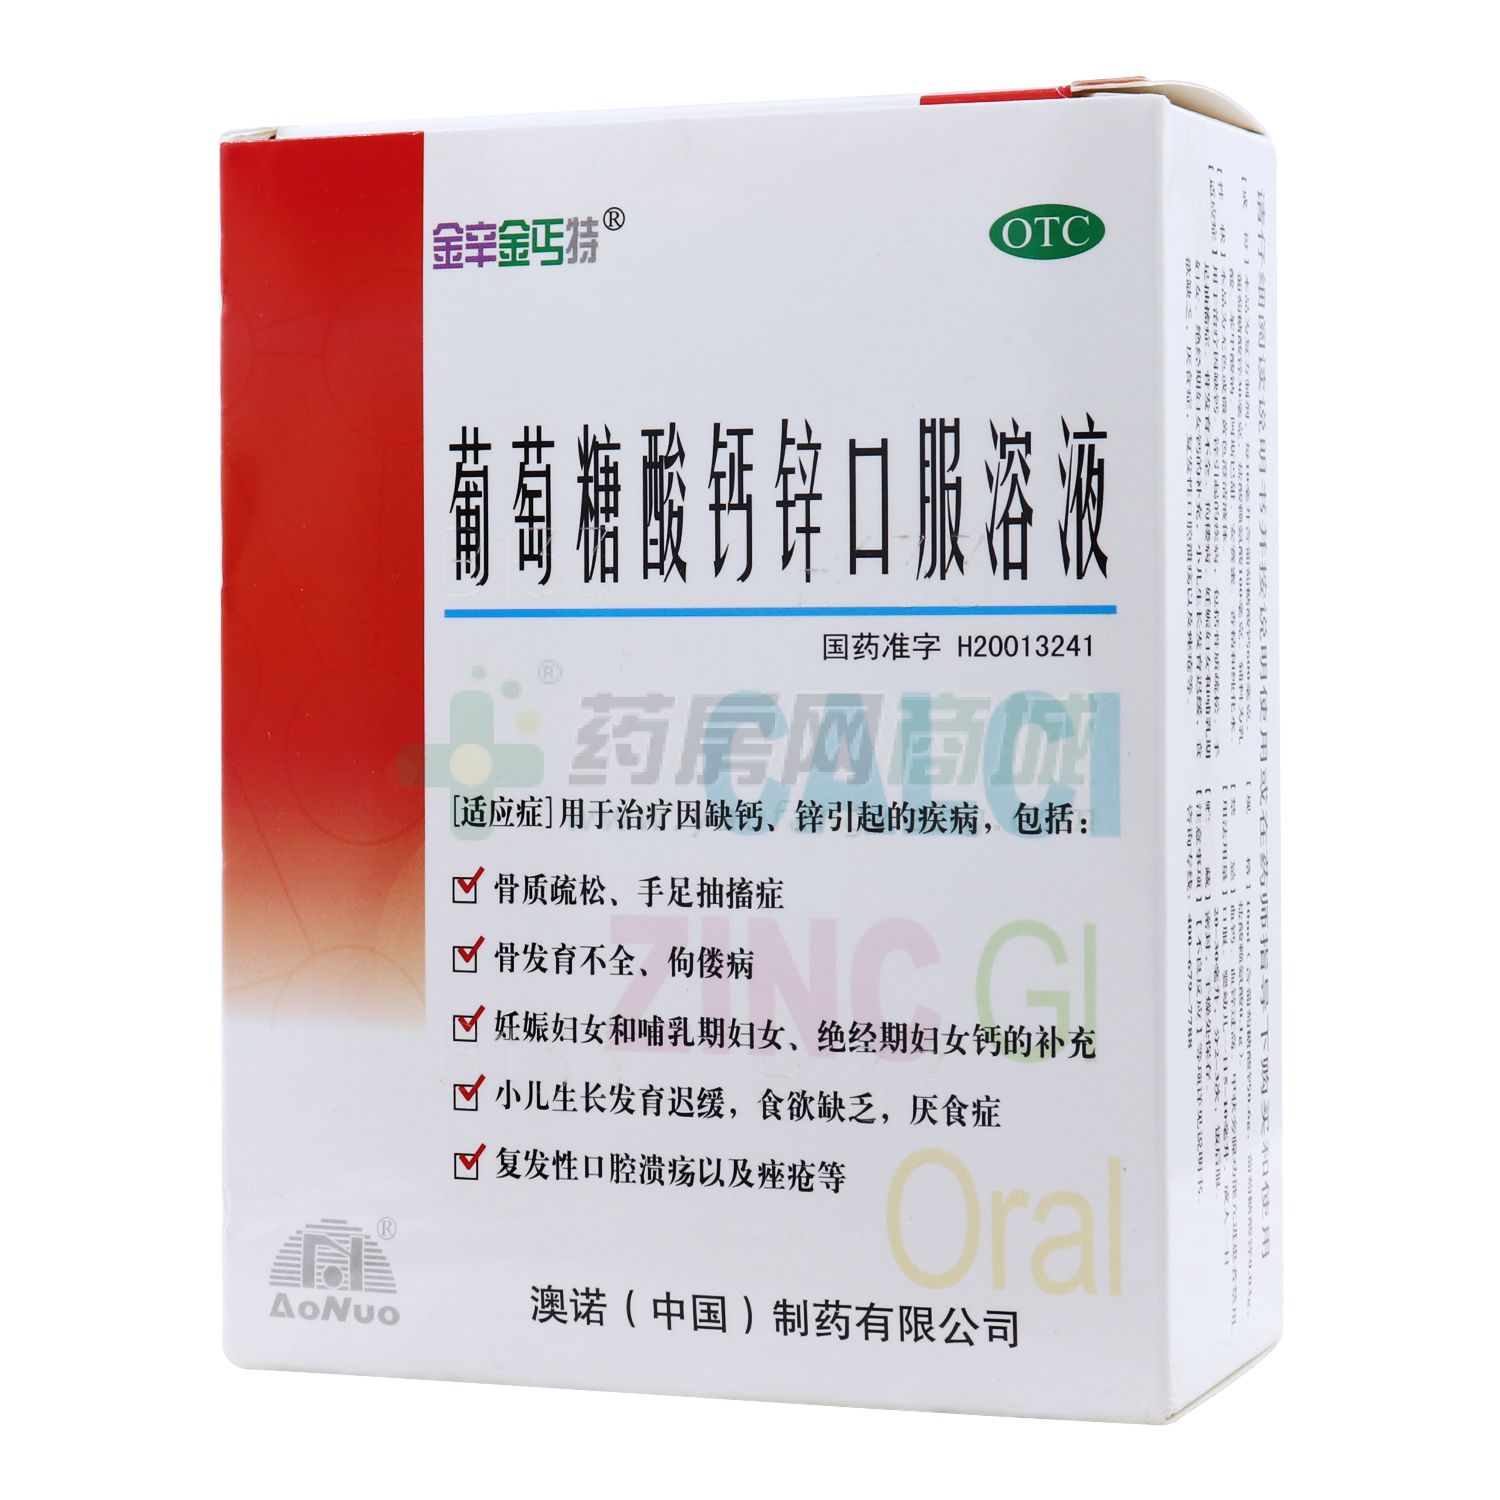 葡萄糖酸钙锌口服溶液 - 澳诺(中国)制药有限公司